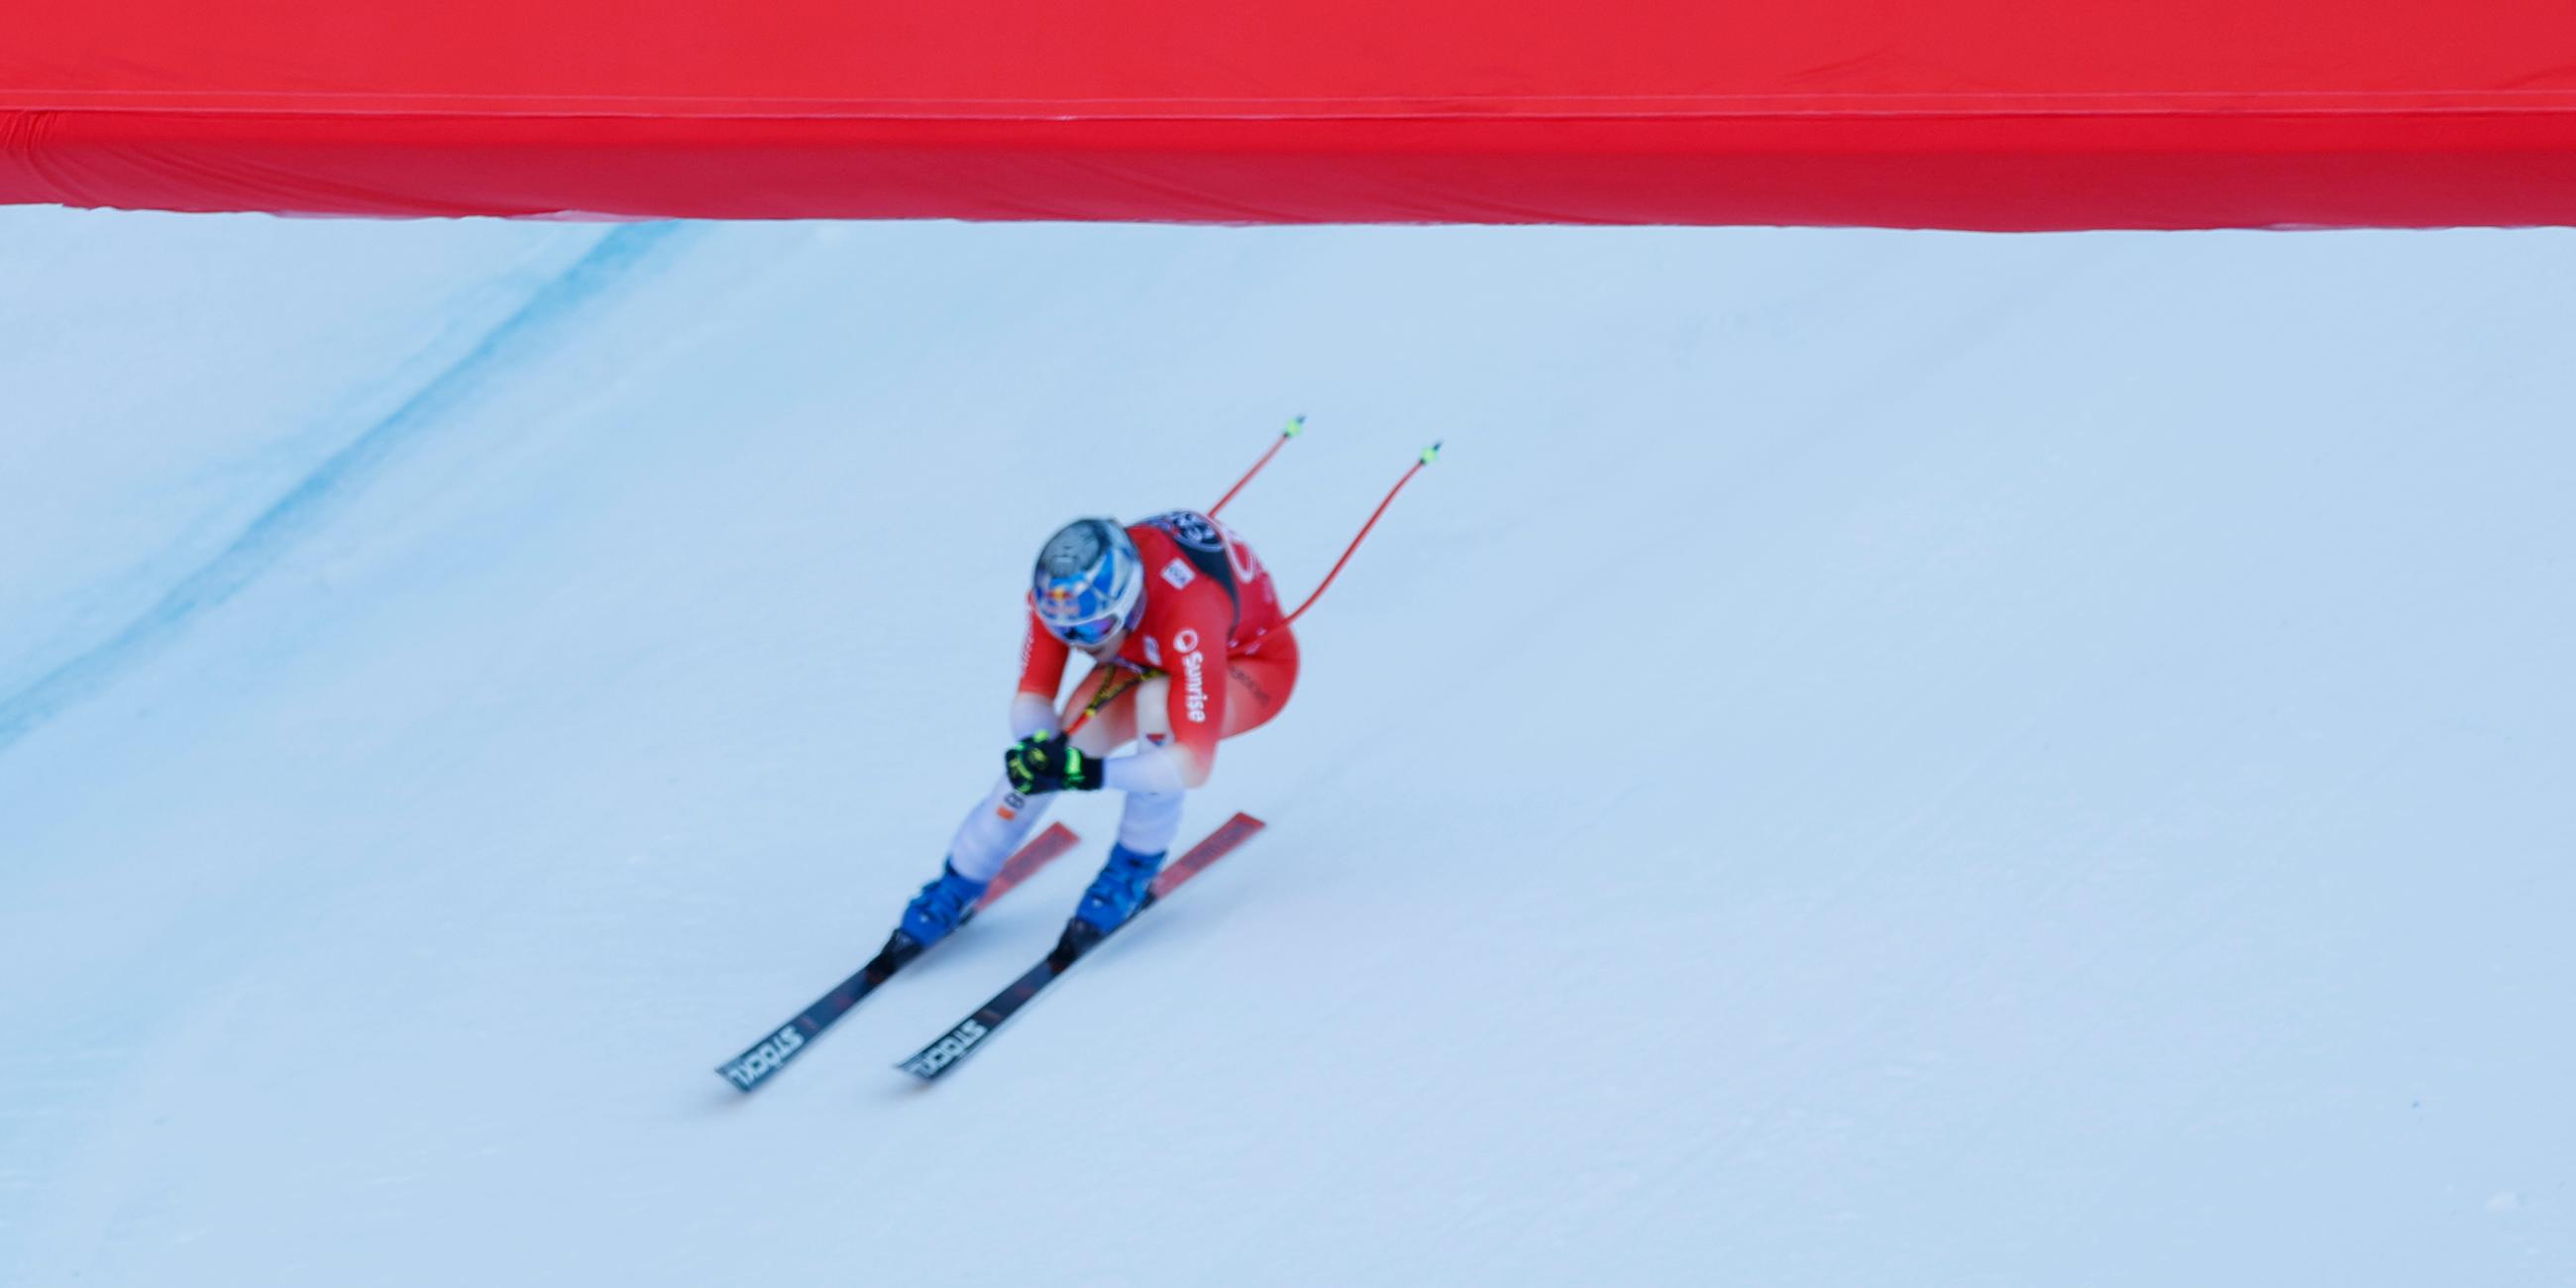 Schweiz, Wengen, Ski Alpin: Schweizer Marco Odermatt überquert die Ziellinie